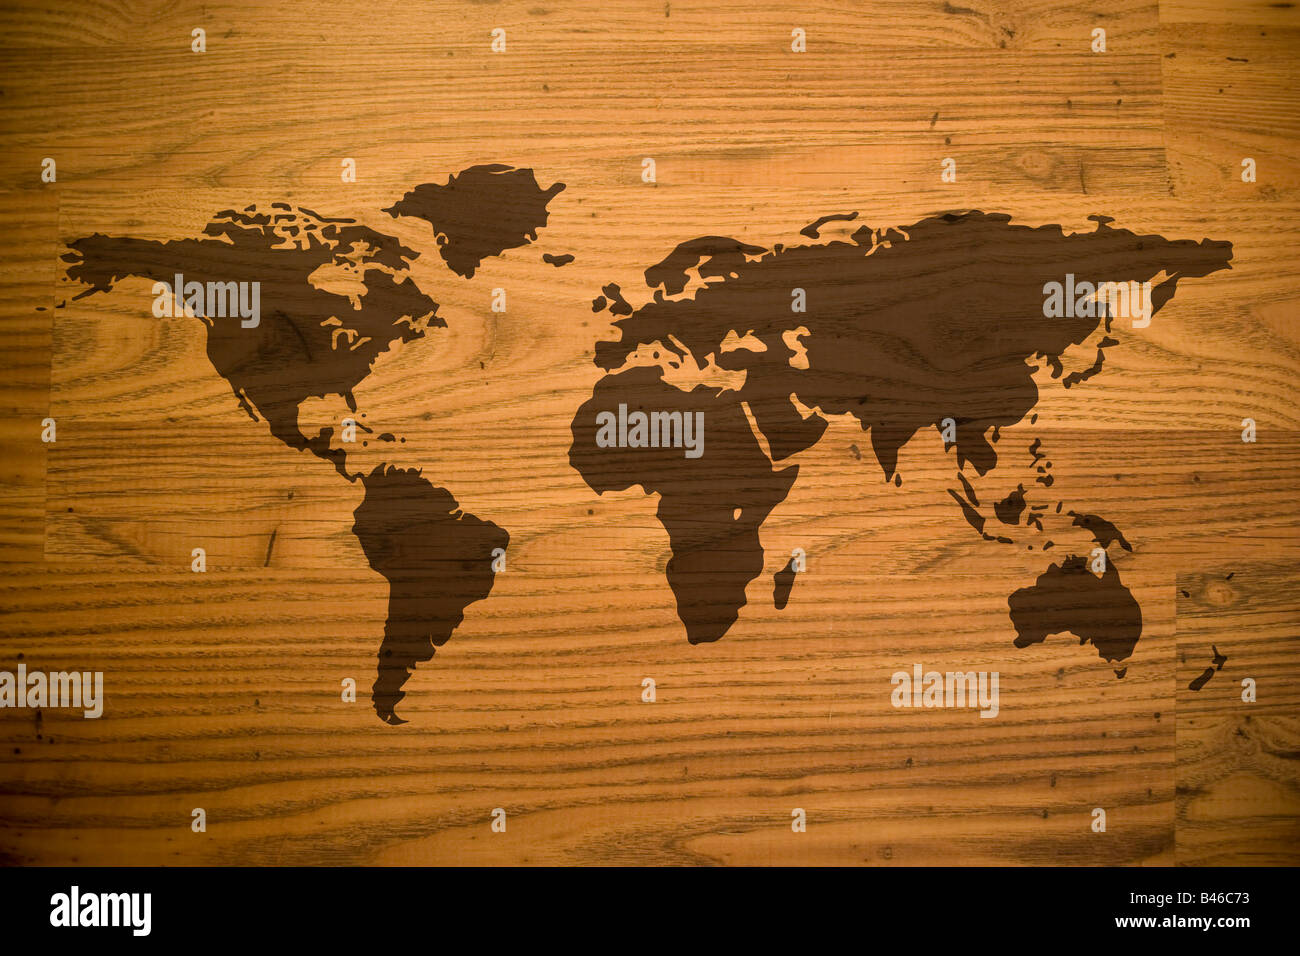 Une carte du monde et de tous les continents sur une texture woodgrain Banque D'Images